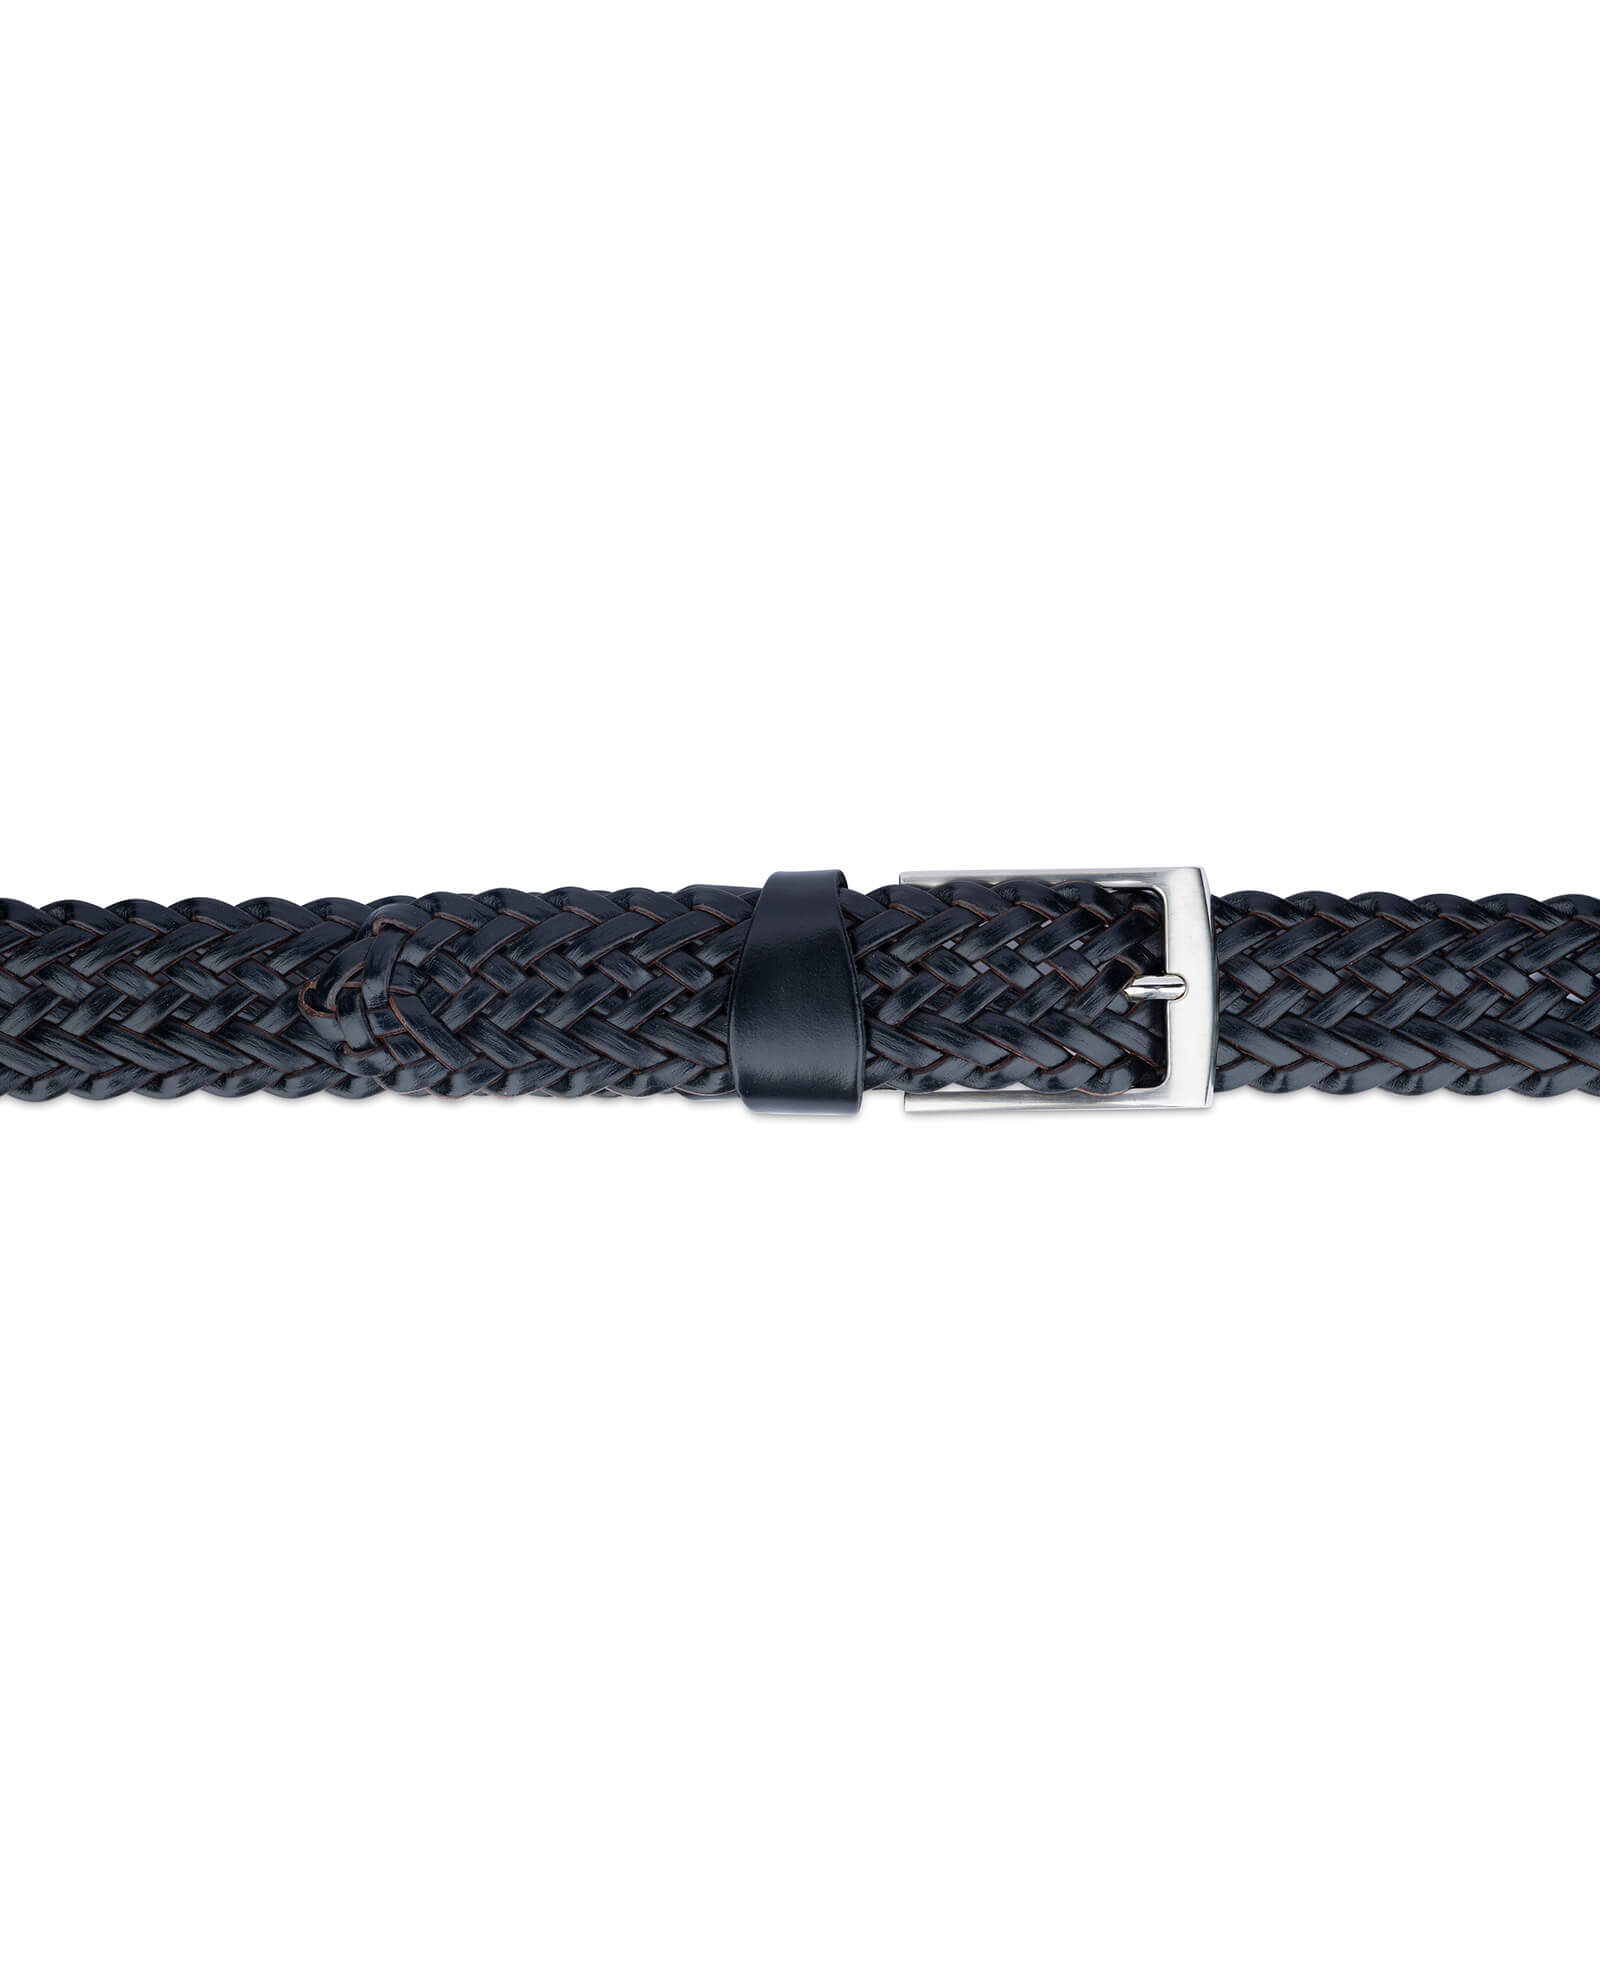 Buy Black Braided Belt For Men | LeatherBeltsOnline.com